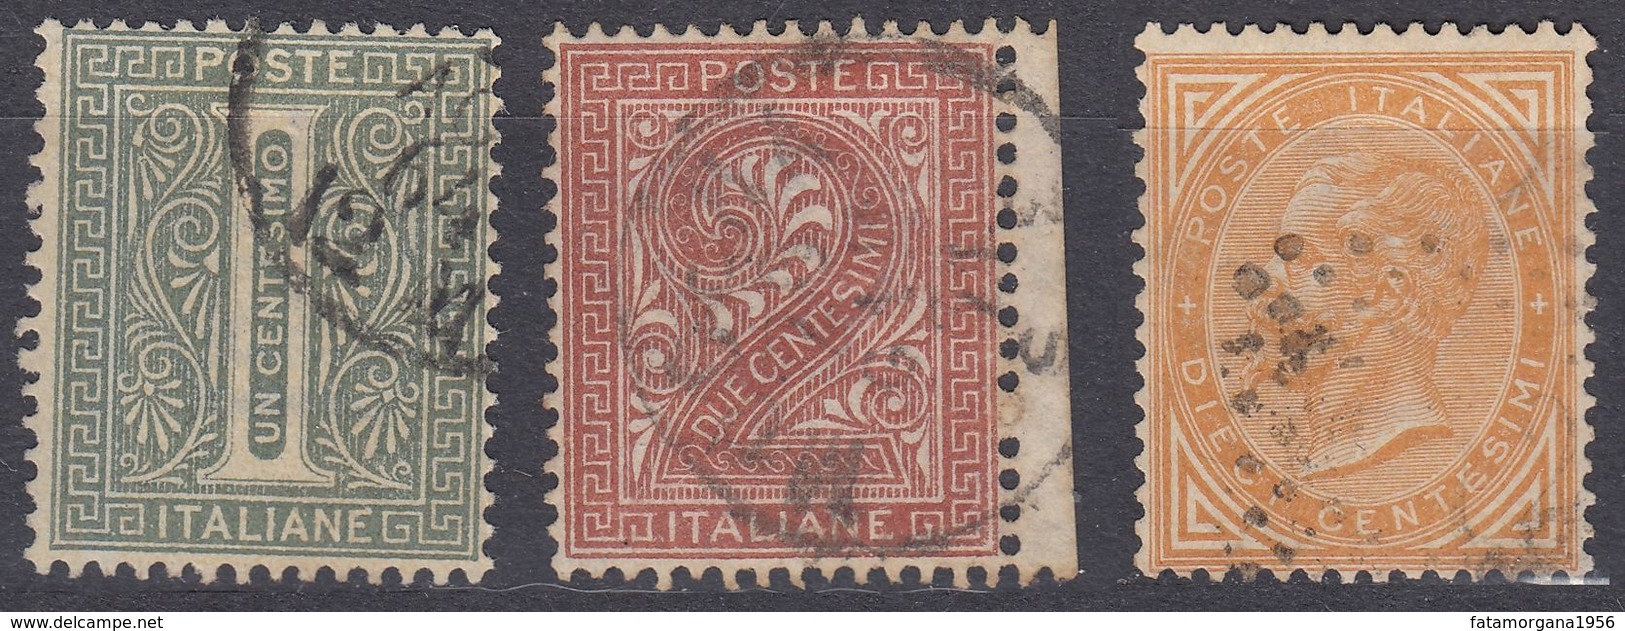 ITALIA - 1863 - Lotto Di Tre Valori Usati: Yvert 12, 13 E 15, Come Da Immagine. - Usati